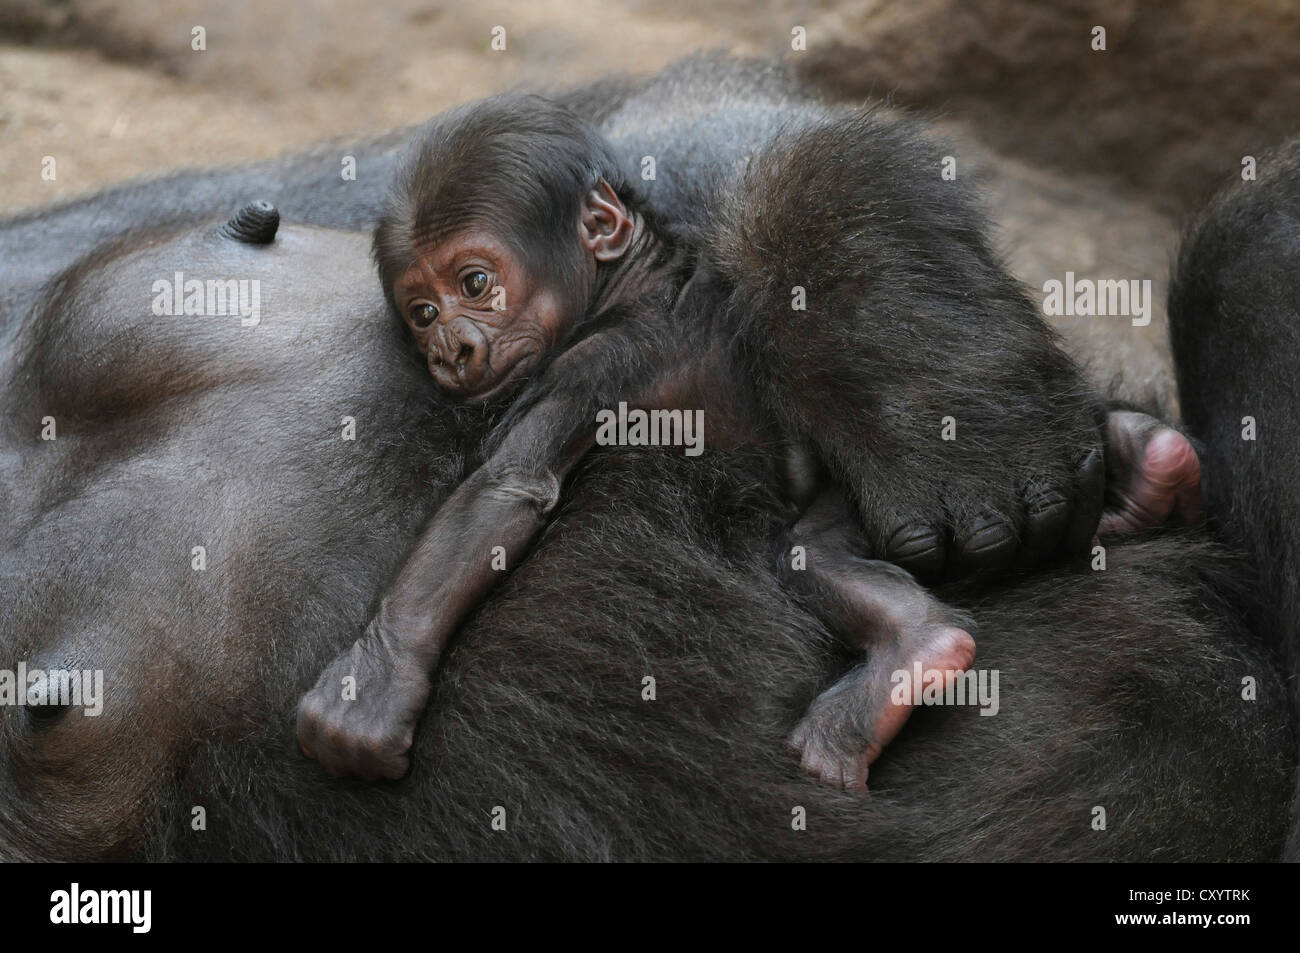 Gorila de las tierras bajas occidentales (Gorilla gorilla gorilla), bebe durmiendo en el vientre de su madre, cautiva, especies africanas Foto de stock